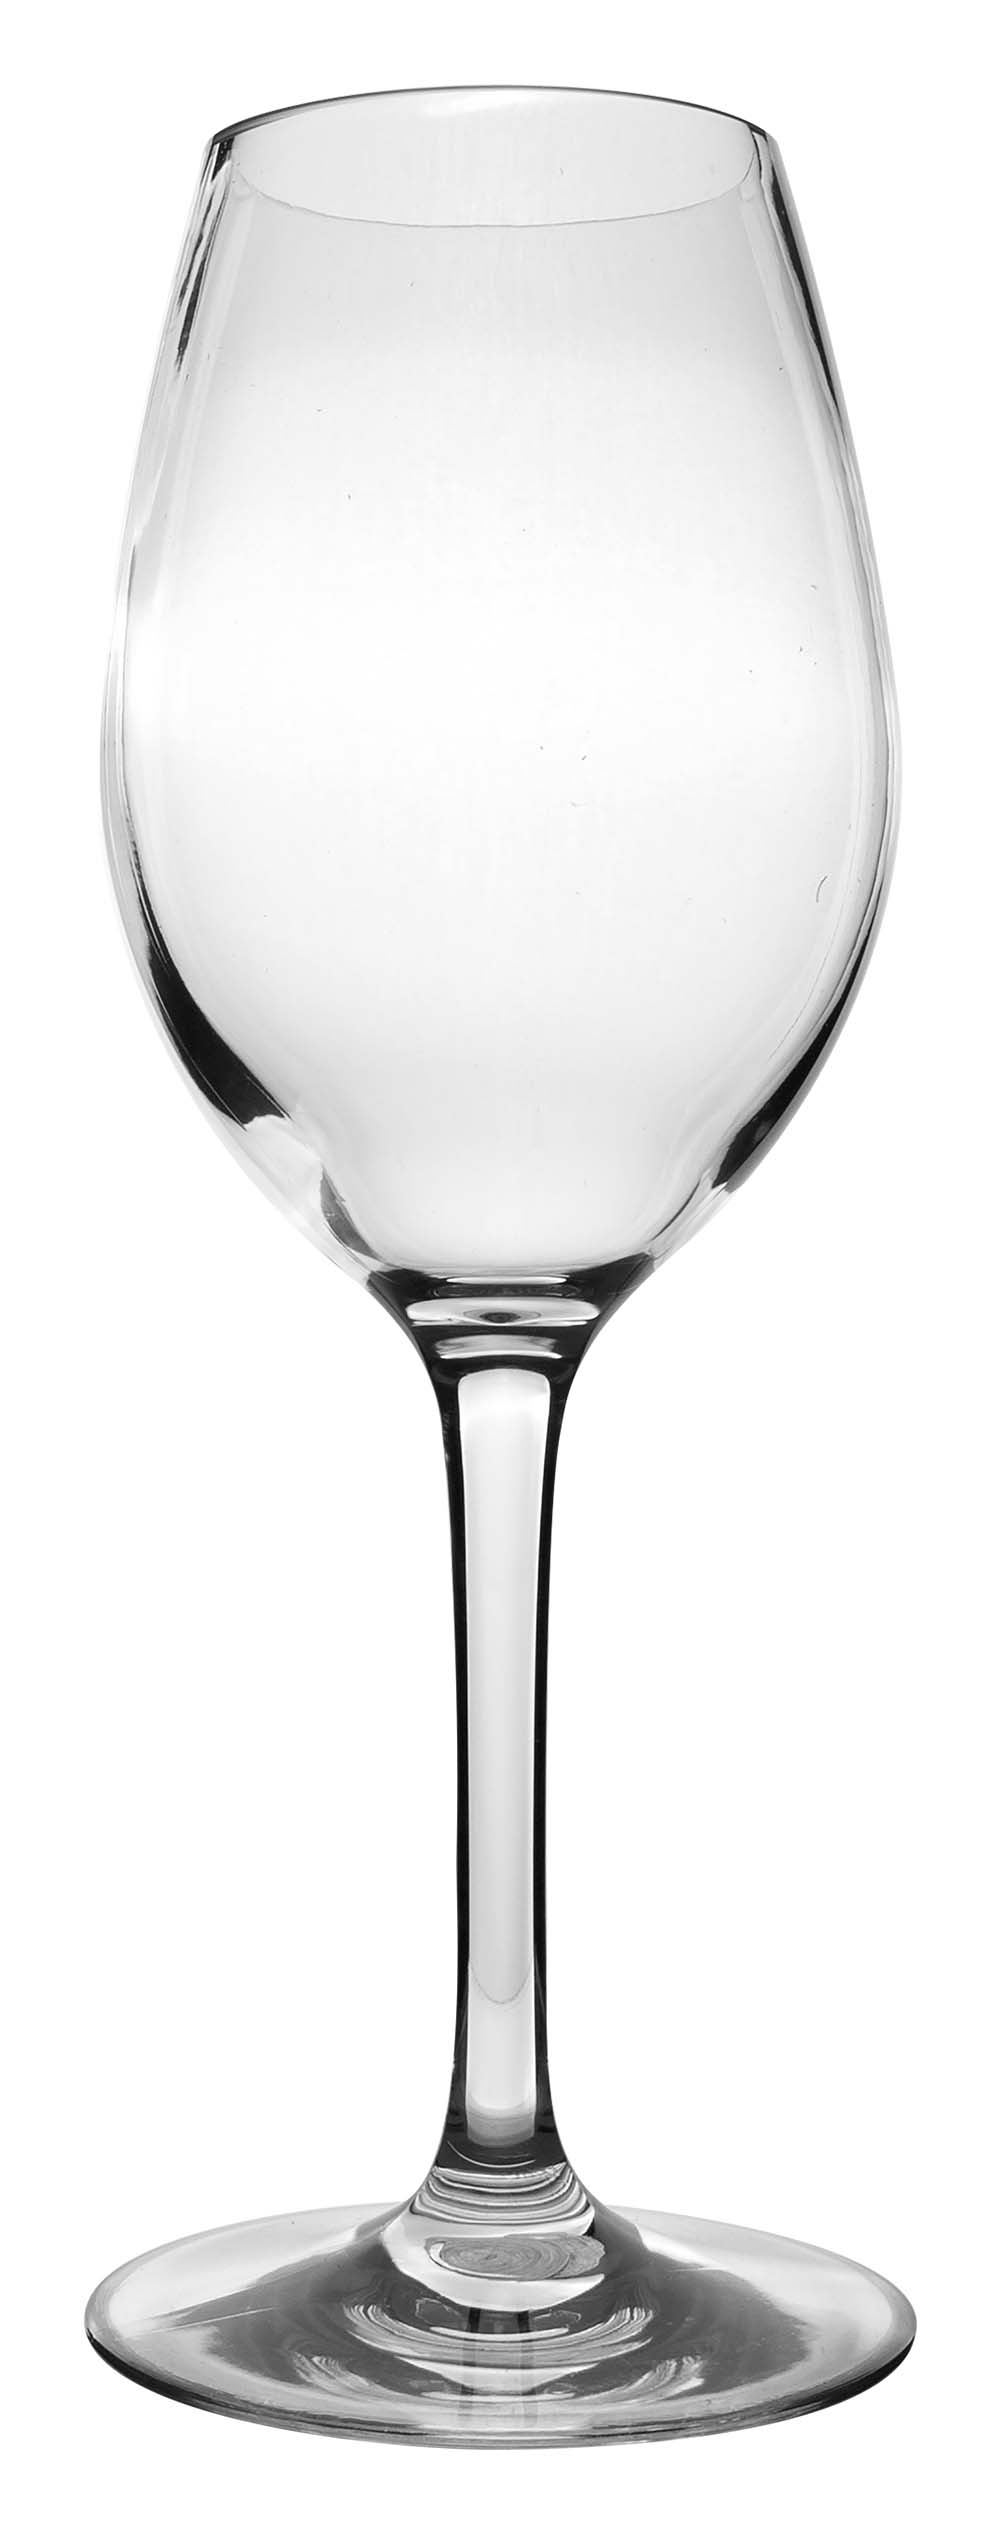 6101462 Ein besonders stabiles und elegantes Set Weißweingläser. Stand stabil durch den rutschfesten Silikonring im Fuß. Hergestellt aus Tritan. Infolgedessen sind diese Gläser fast unzerbrechlich, leicht und kratzfest. Auch diese Gläser sind spülmaschinenfest. Verpackt pro 2 Stück.